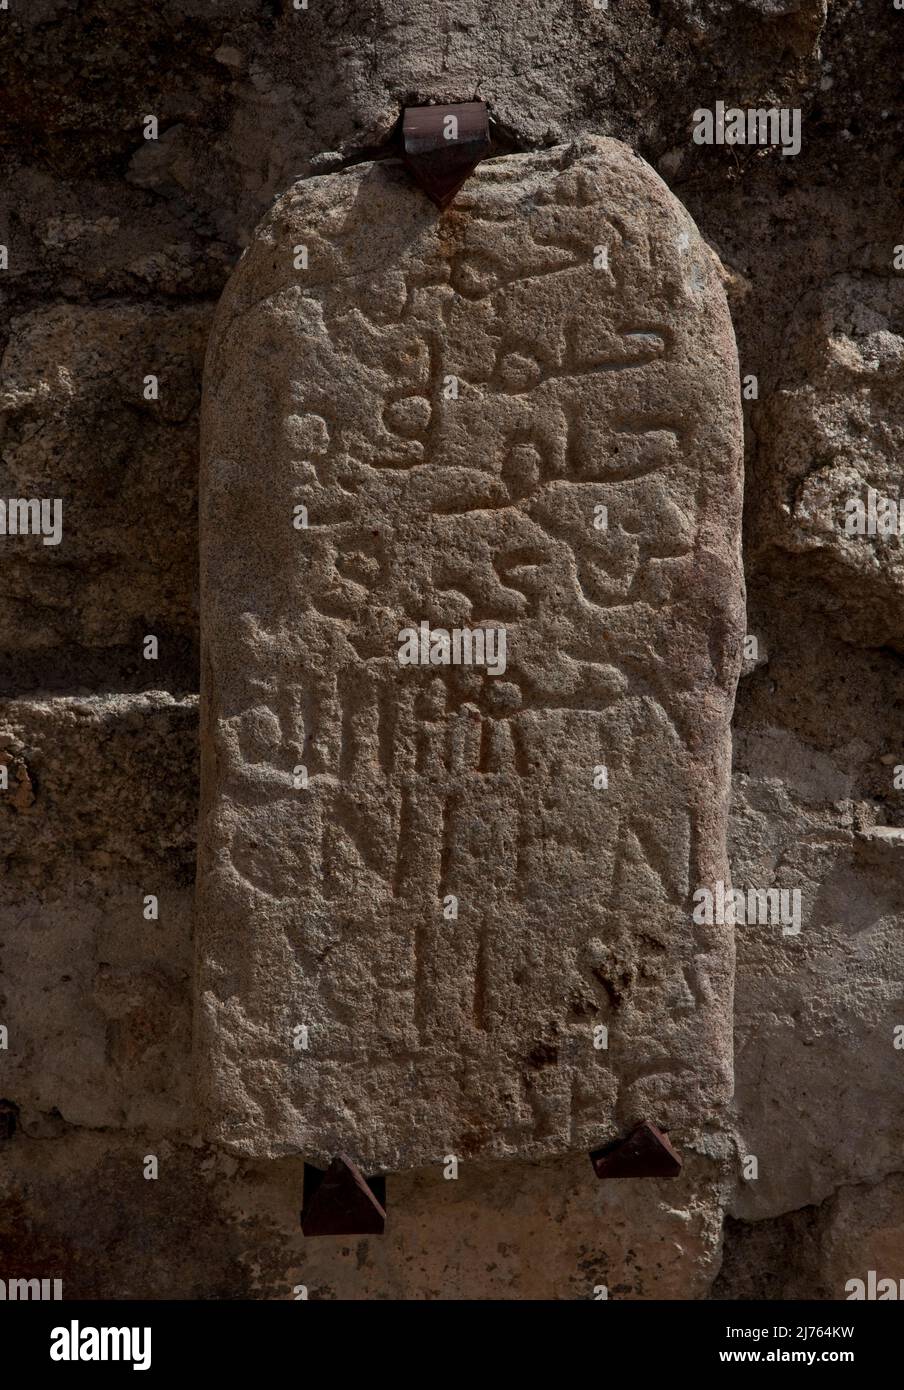 Stein mit arabischen und lateinischen Schriftzeichen an einer Wand im Burghof Stock Photo